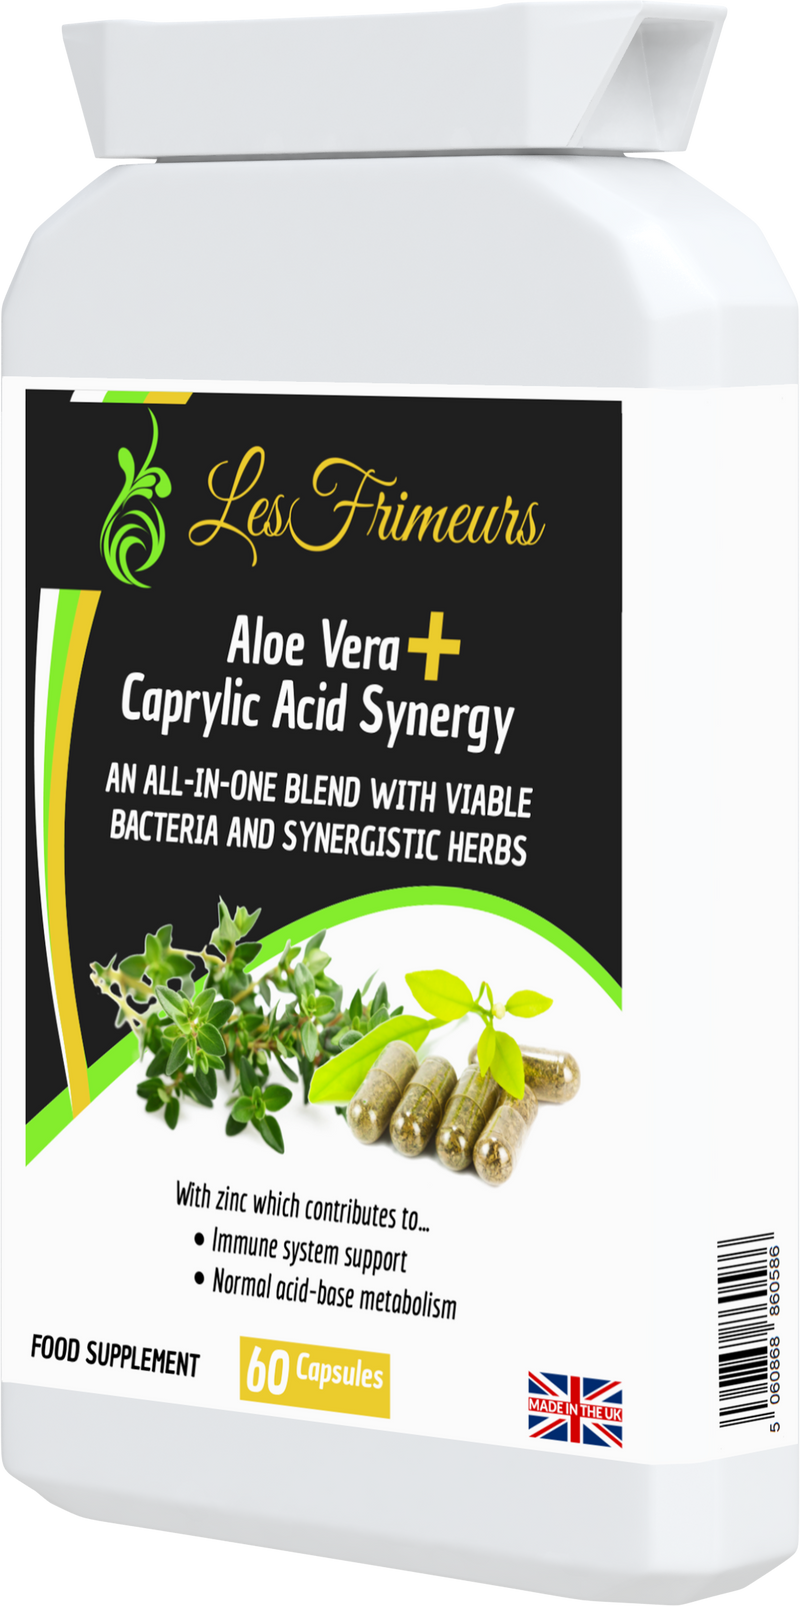 Aloe Vera + Caprylic Acid Synergy